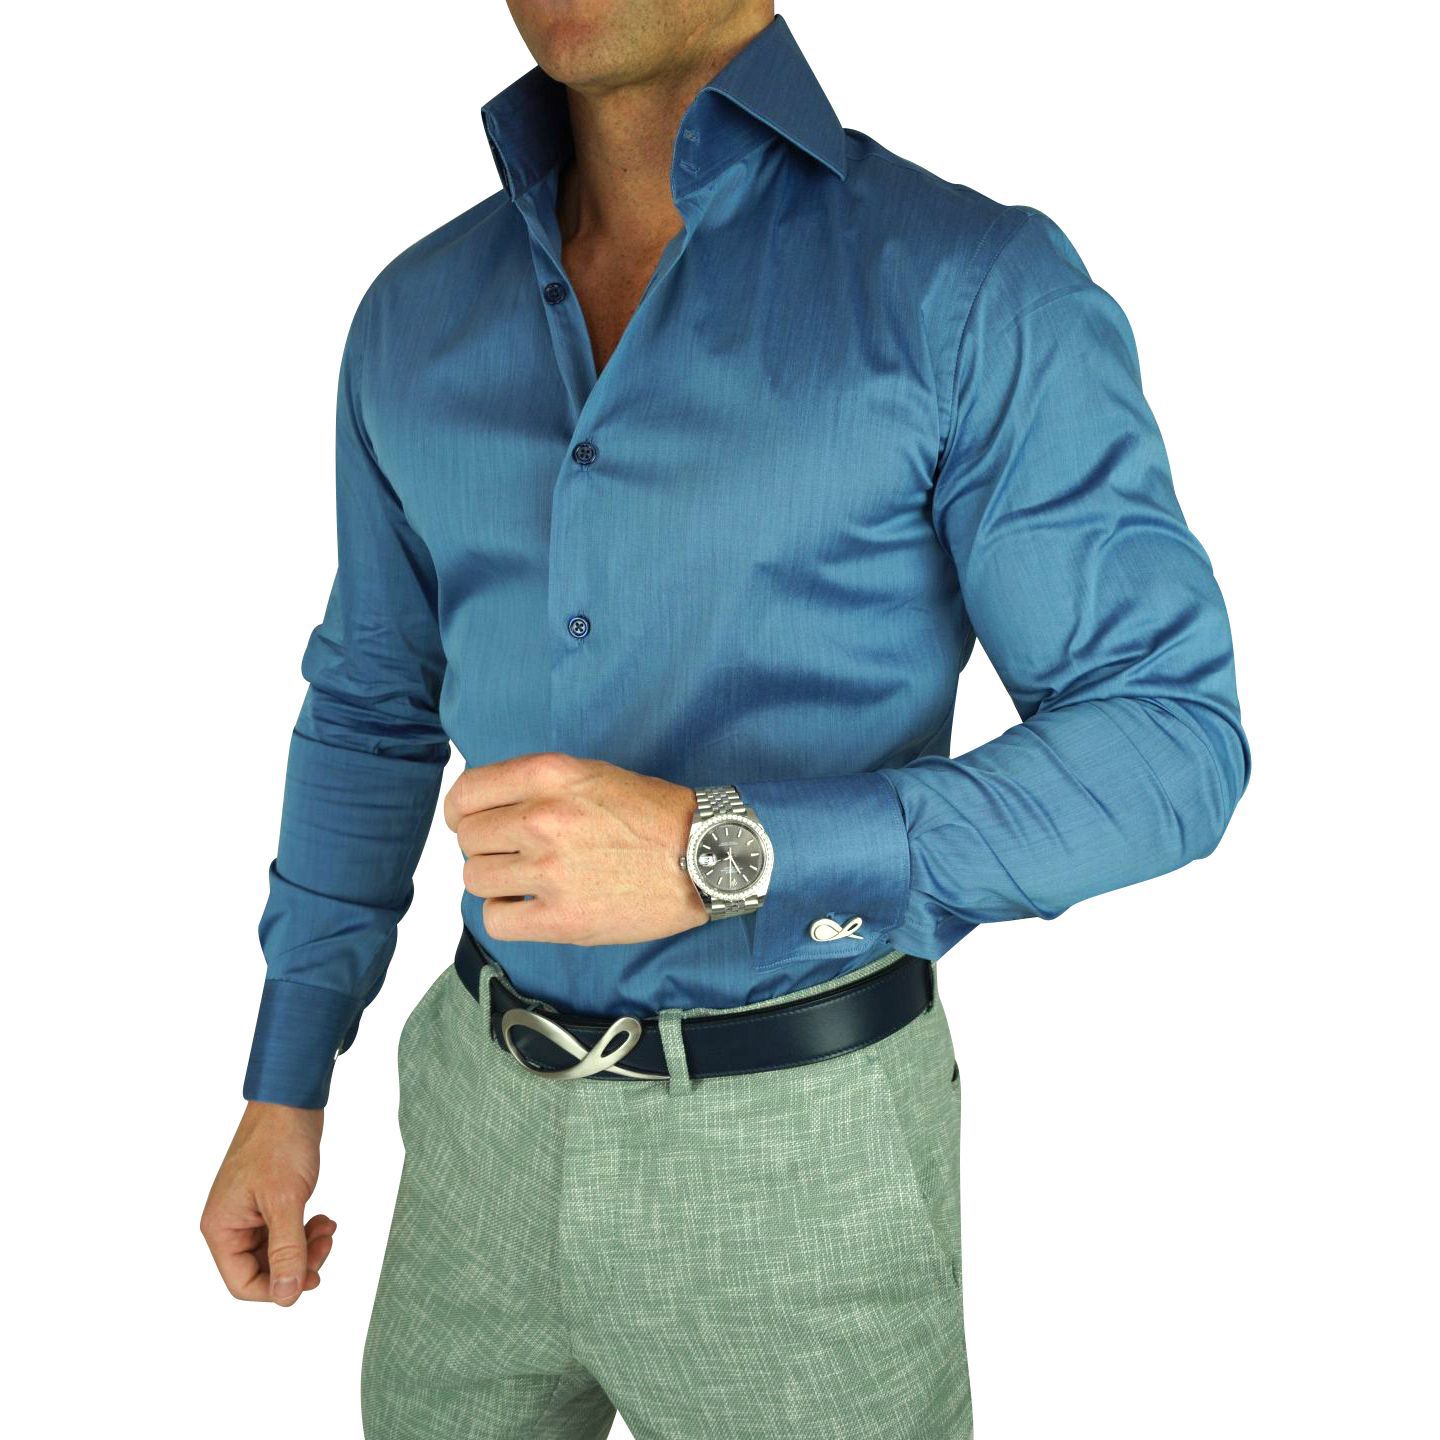 men’s dress shirt blue